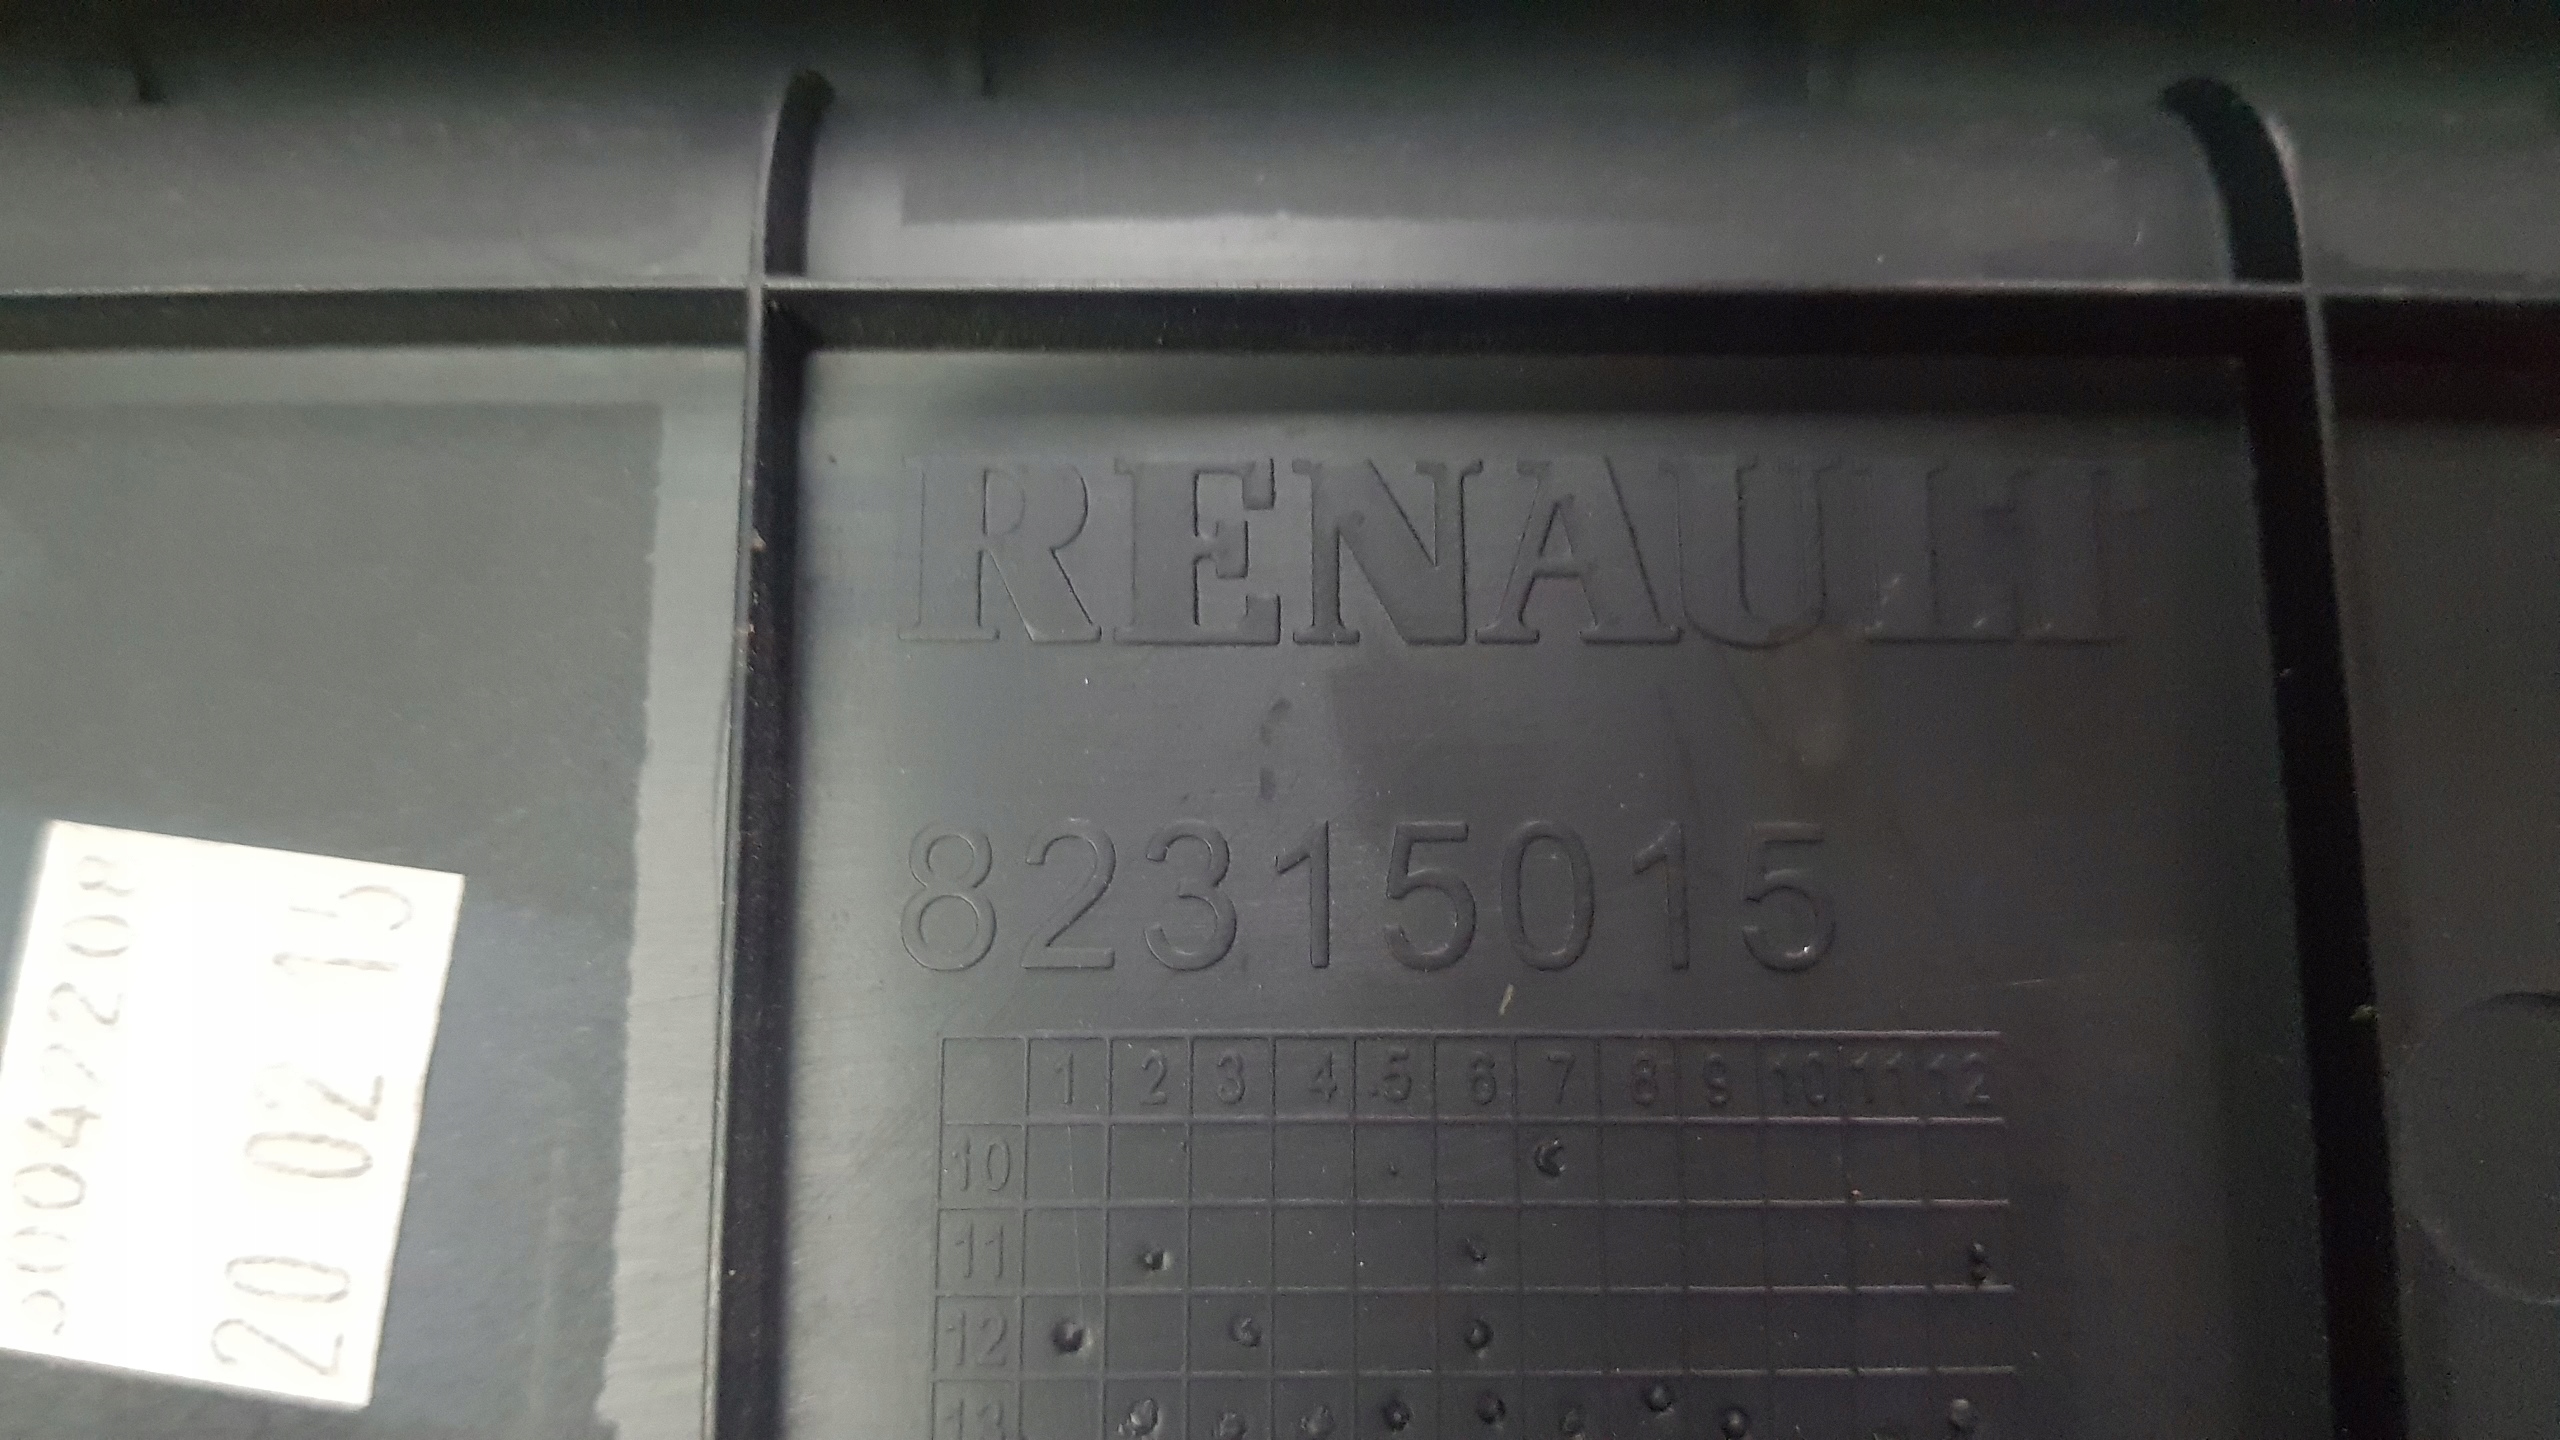 osłona zaślepka nakładka renault range t 82315015